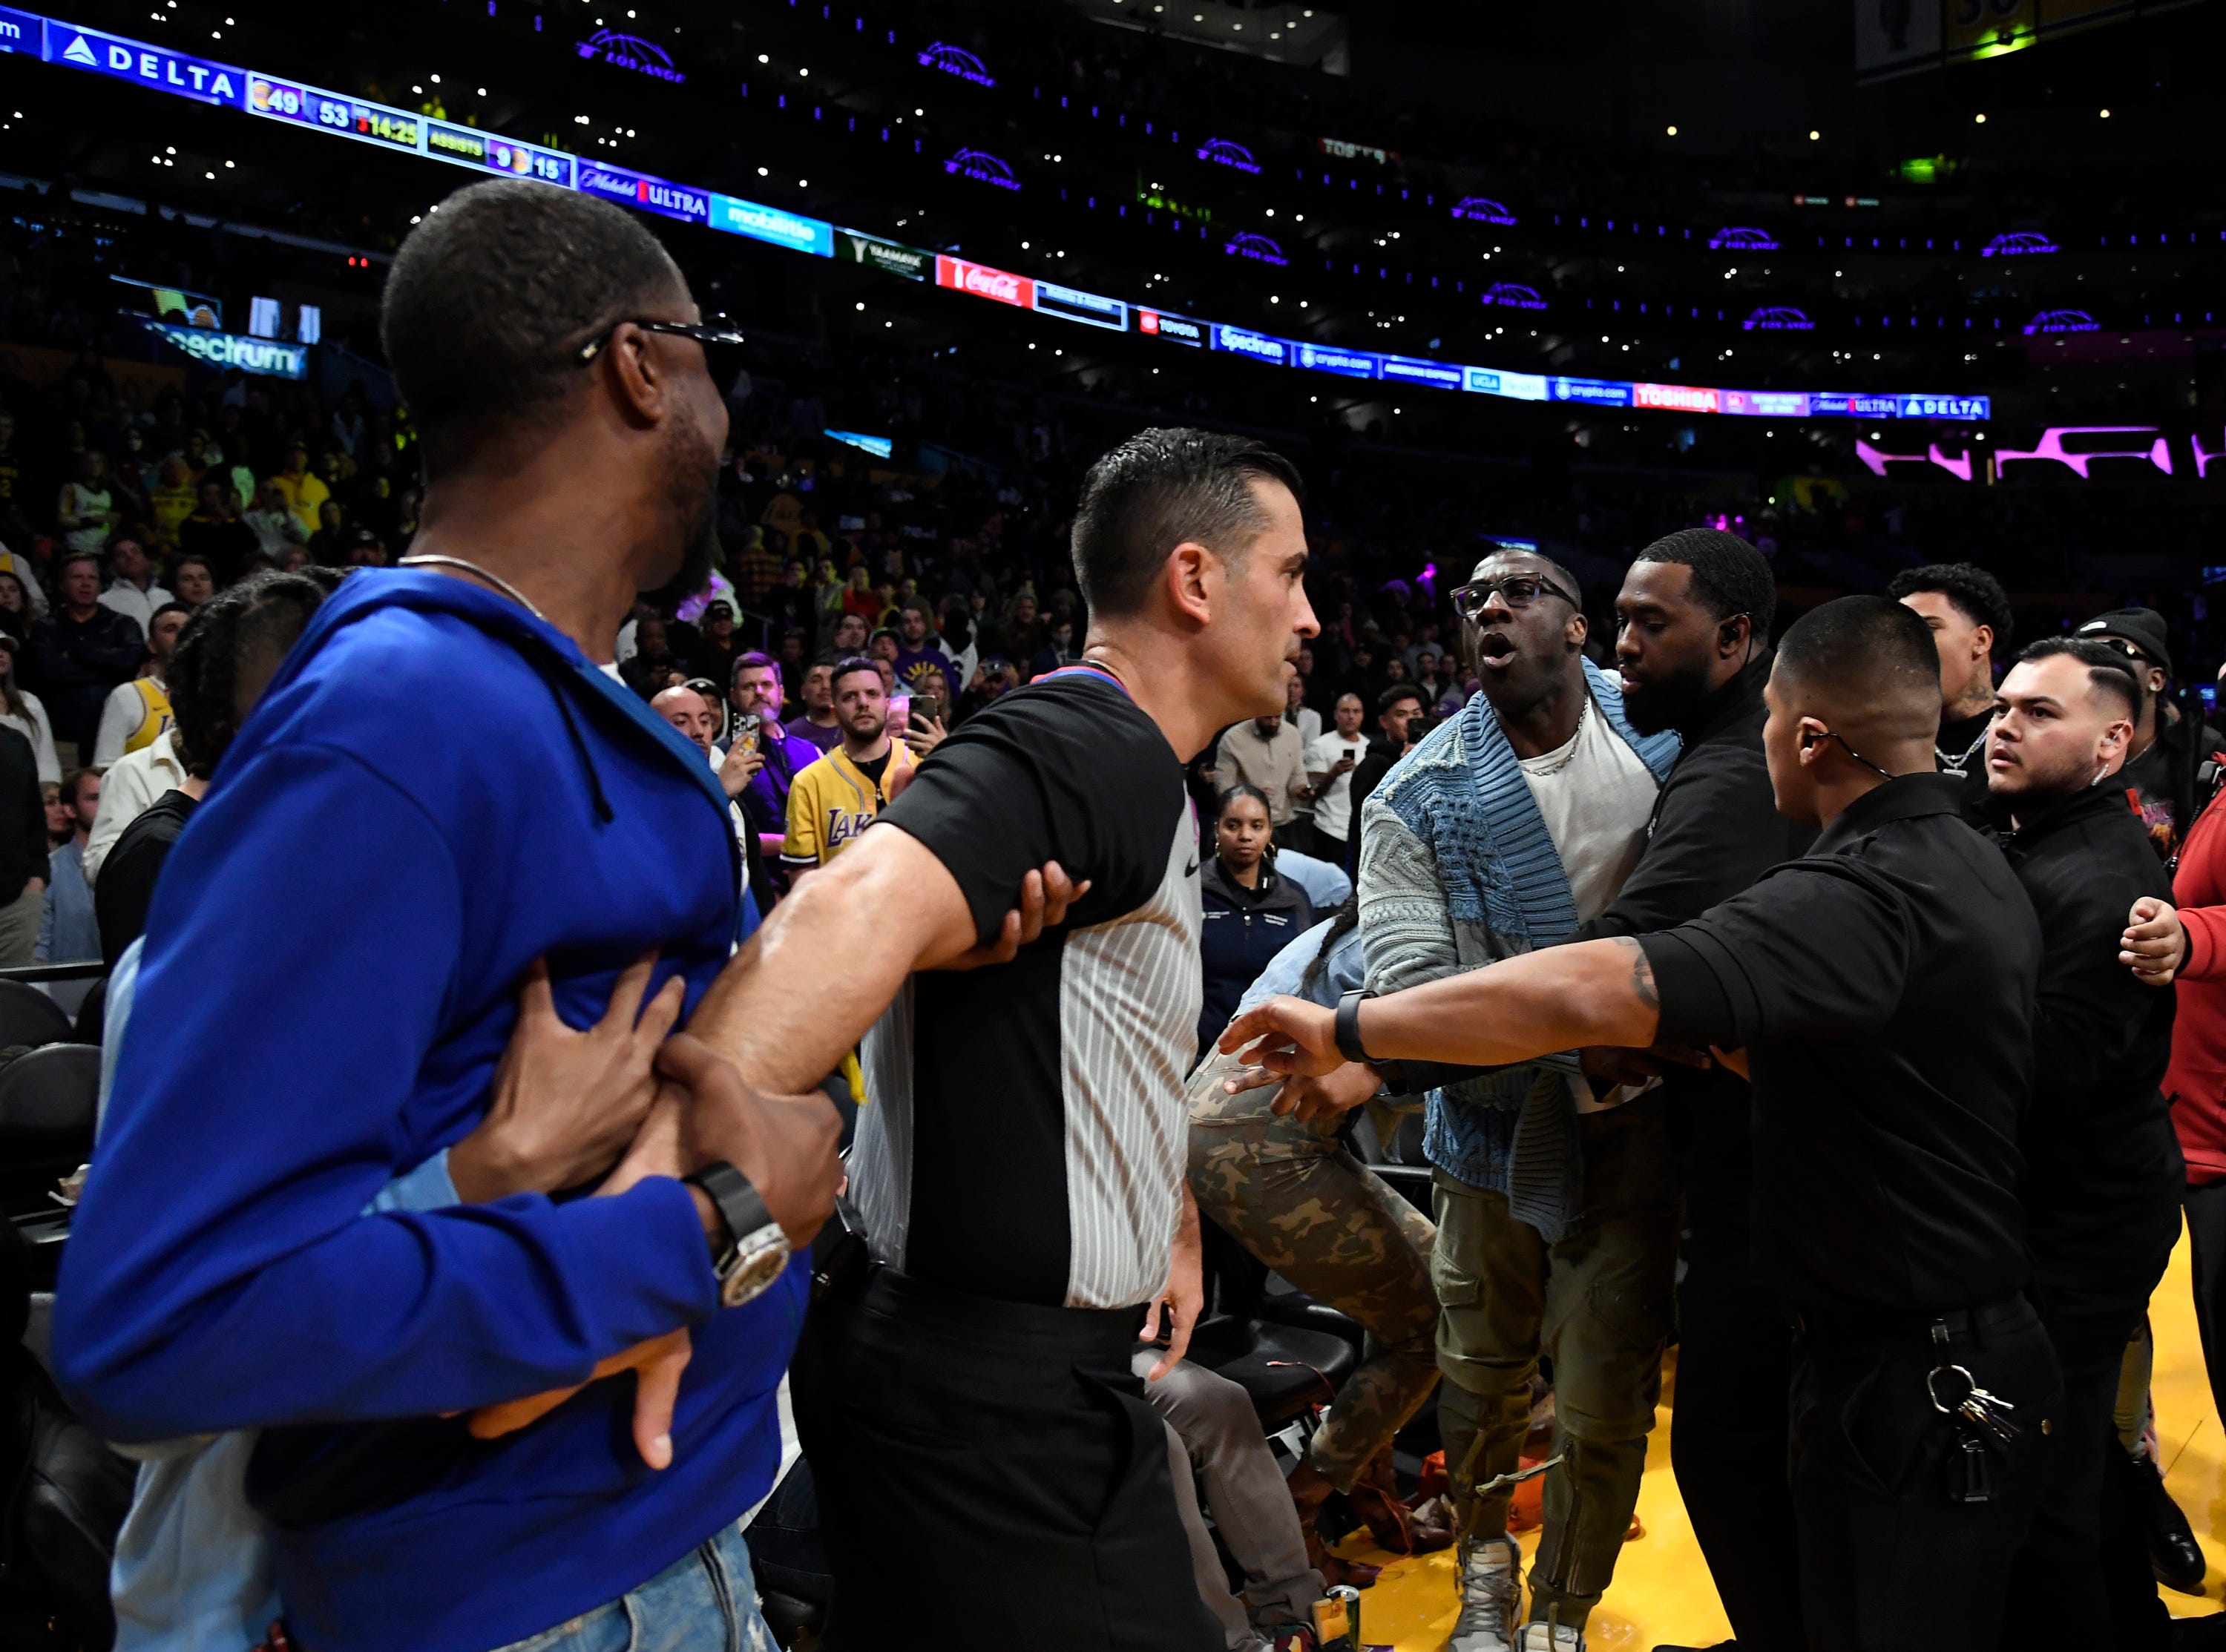 Shannon Sharpe und Tee Morant werden nach einer verbalen Auseinandersetzung während des Grizzlies-Lakers-Spiels in der Crypto.com Arena am 20. Januar 2023 in Los Angeles, Kalifornien, durch Sicherheitskräfte getrennt.